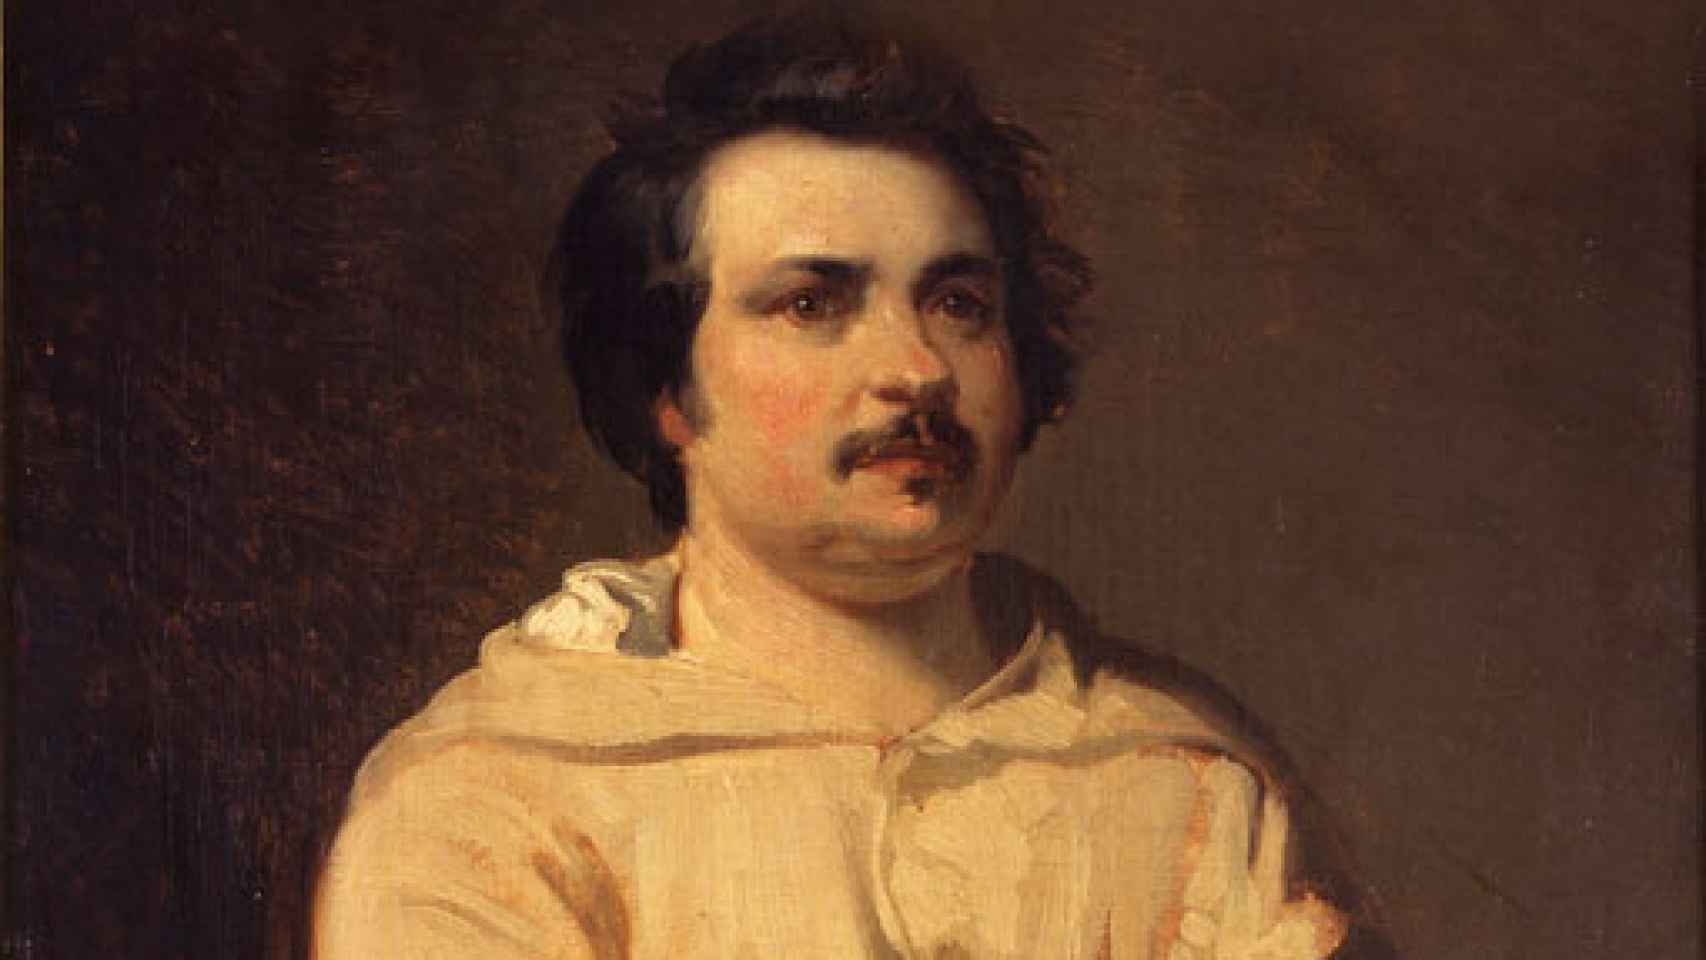 Image: Balzac, La comedia humana